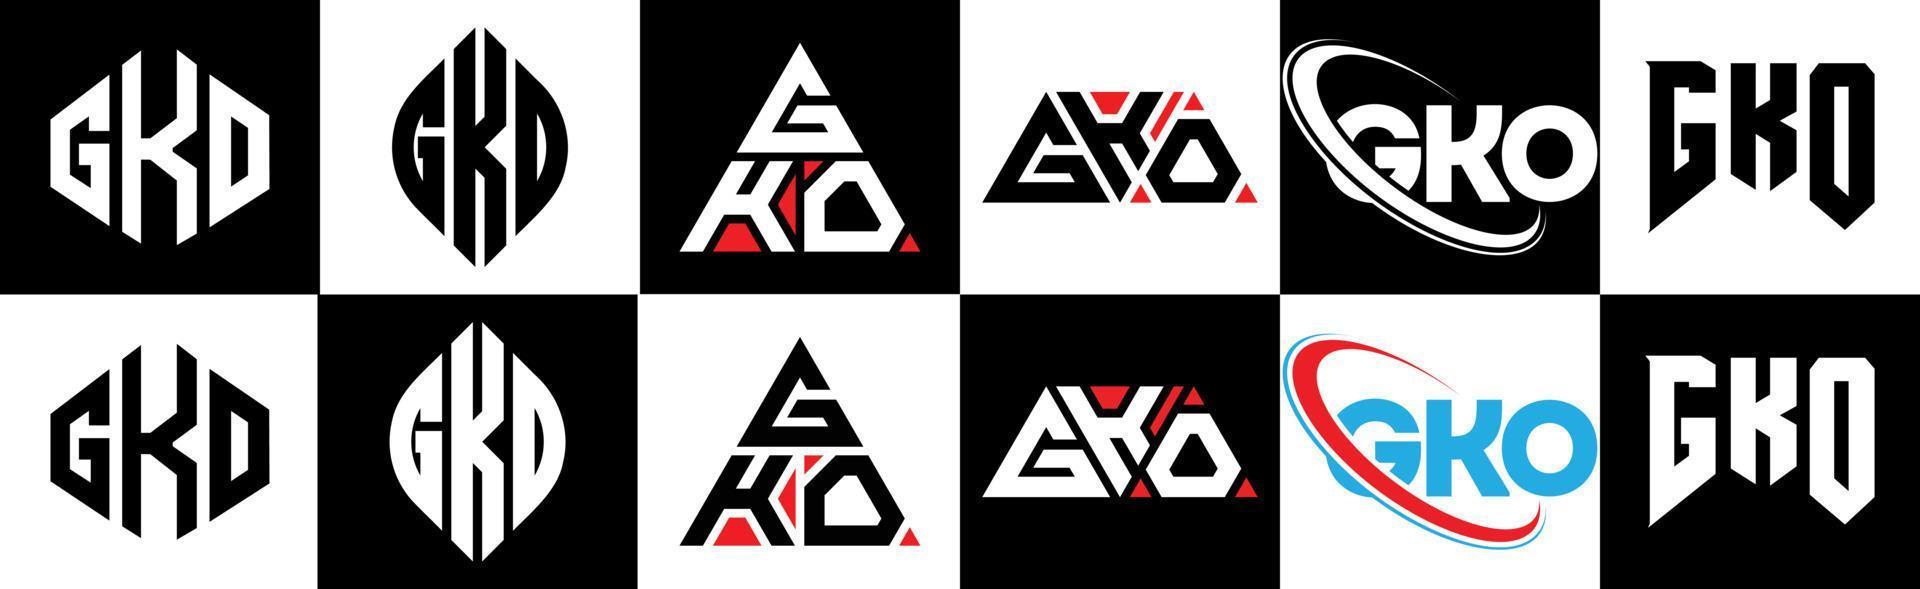 création de logo de lettre gko en six styles. polygone gko, cercle, triangle, hexagone, style plat et simple avec logo de lettre de variation de couleur noir et blanc dans un plan de travail. logo gko minimaliste et classique vecteur